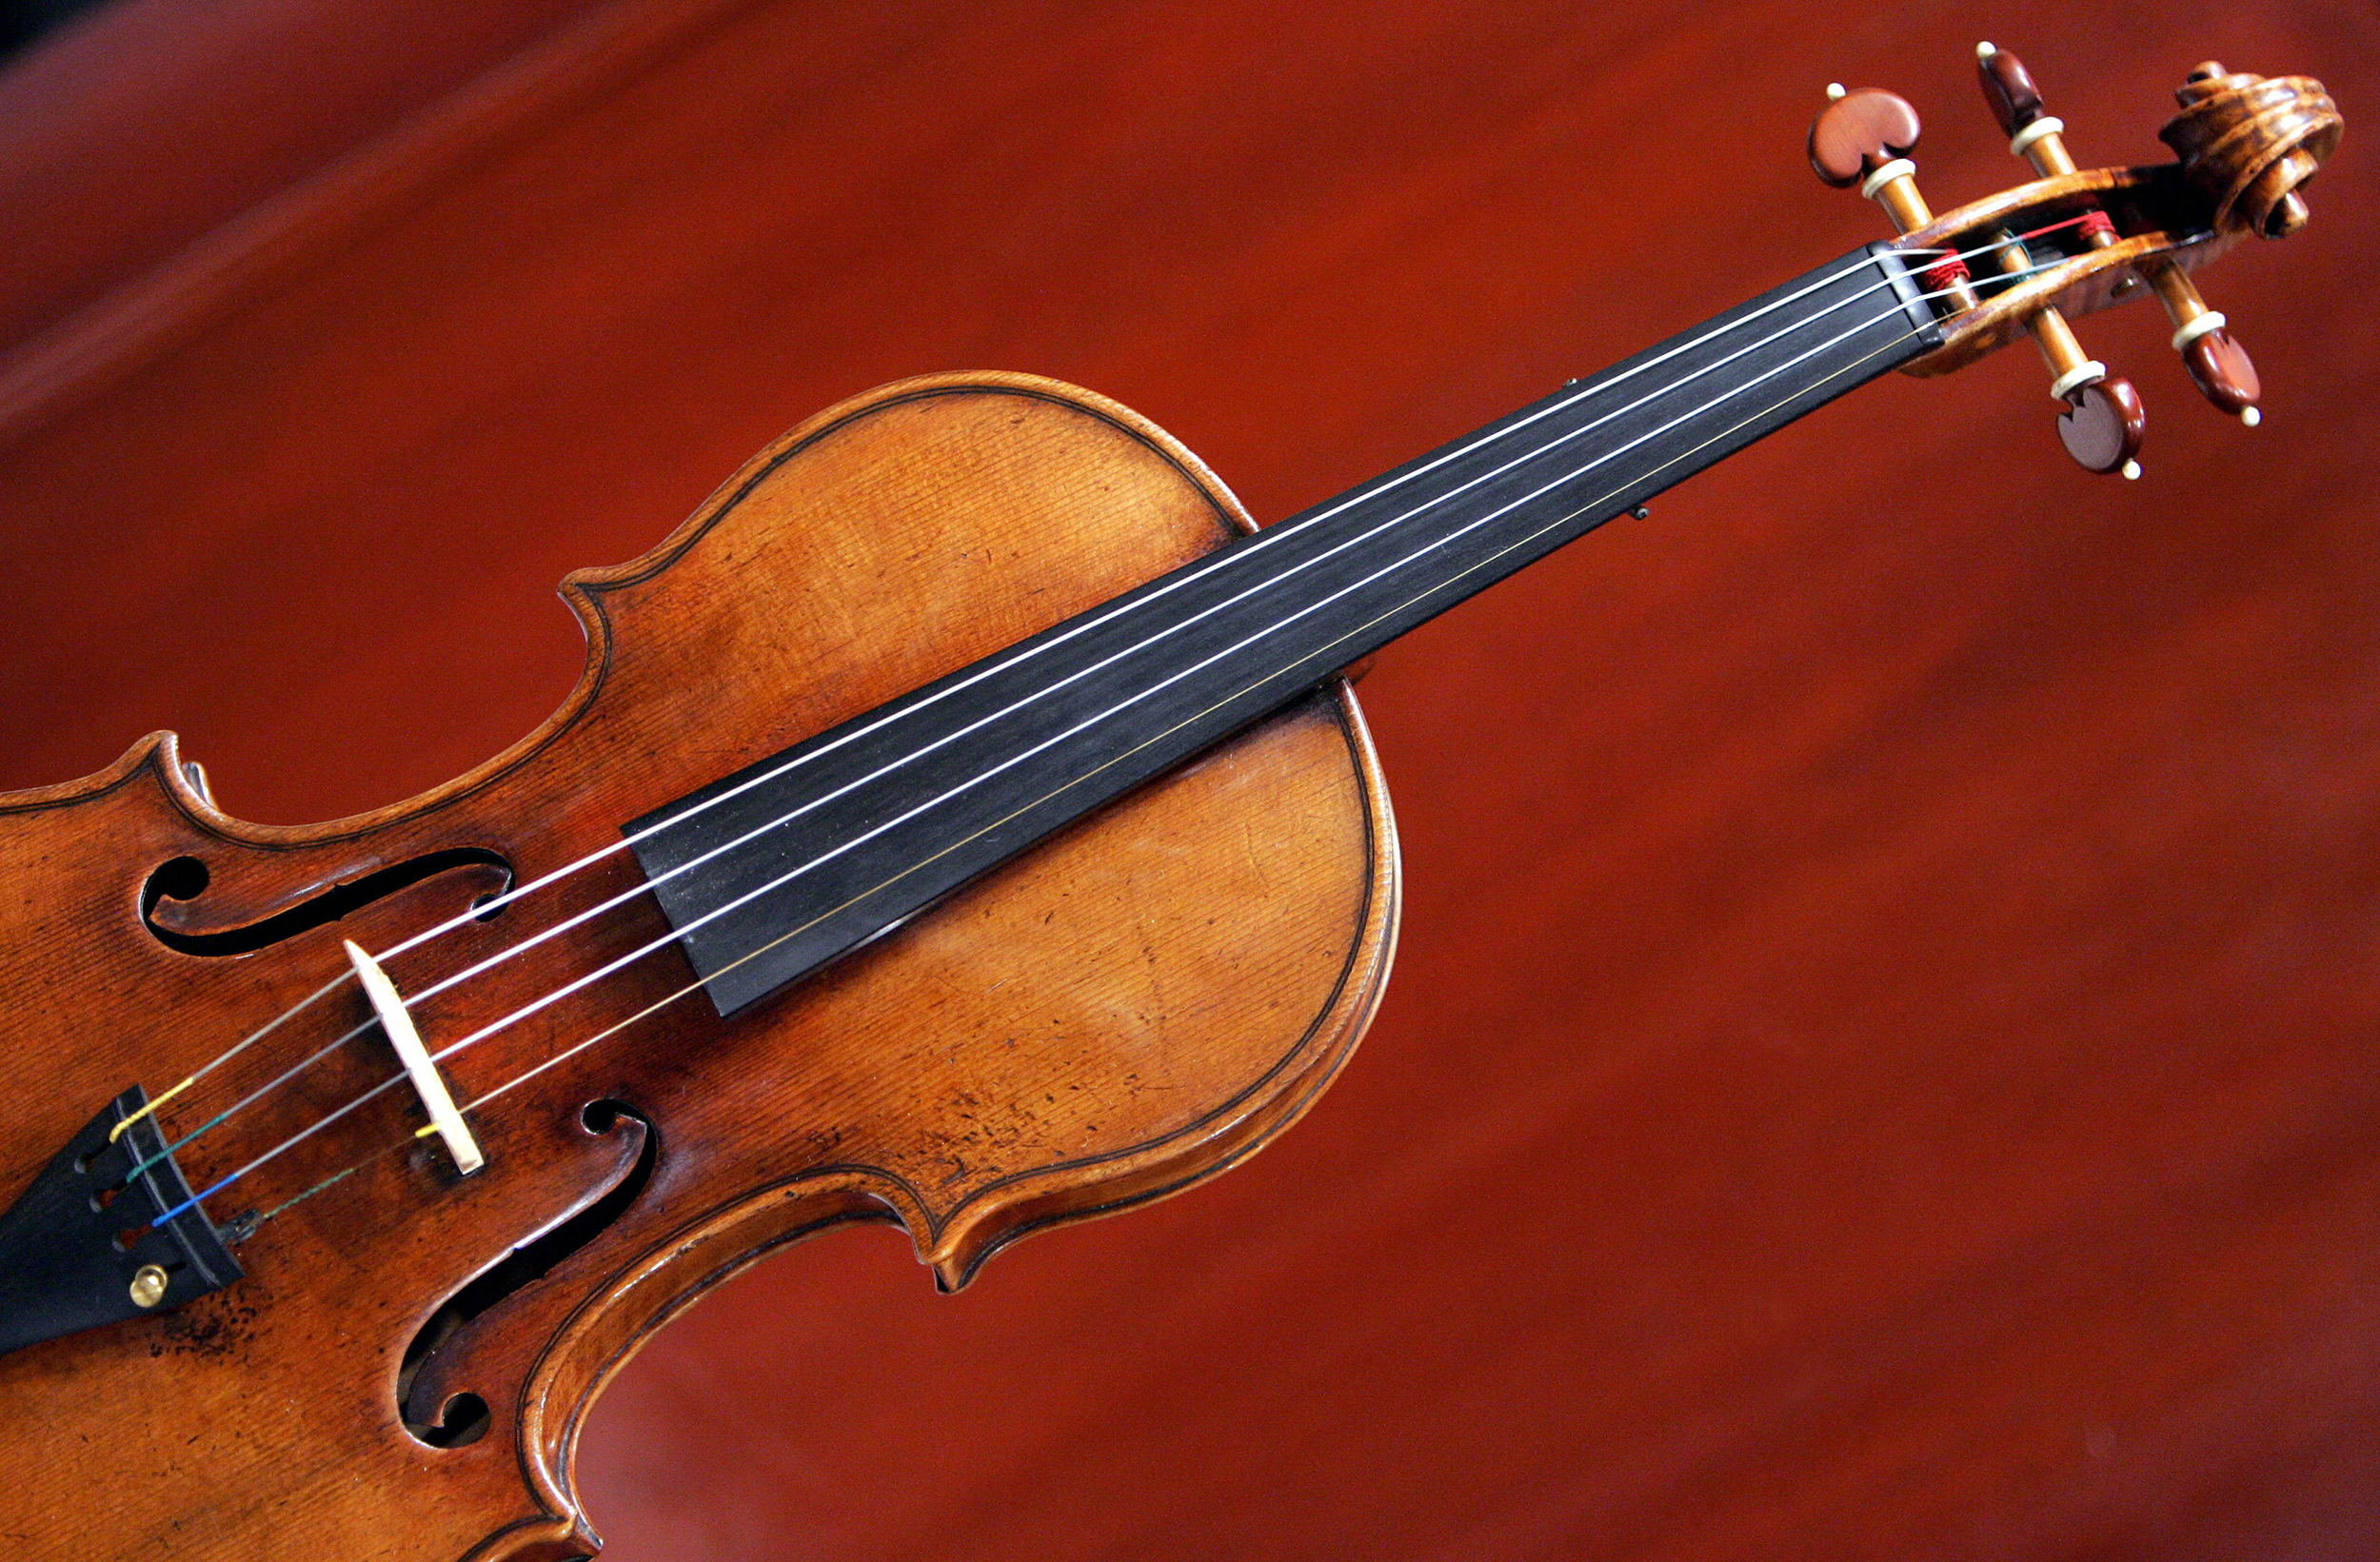 300-year-old Stradivarius violin stolen from musician